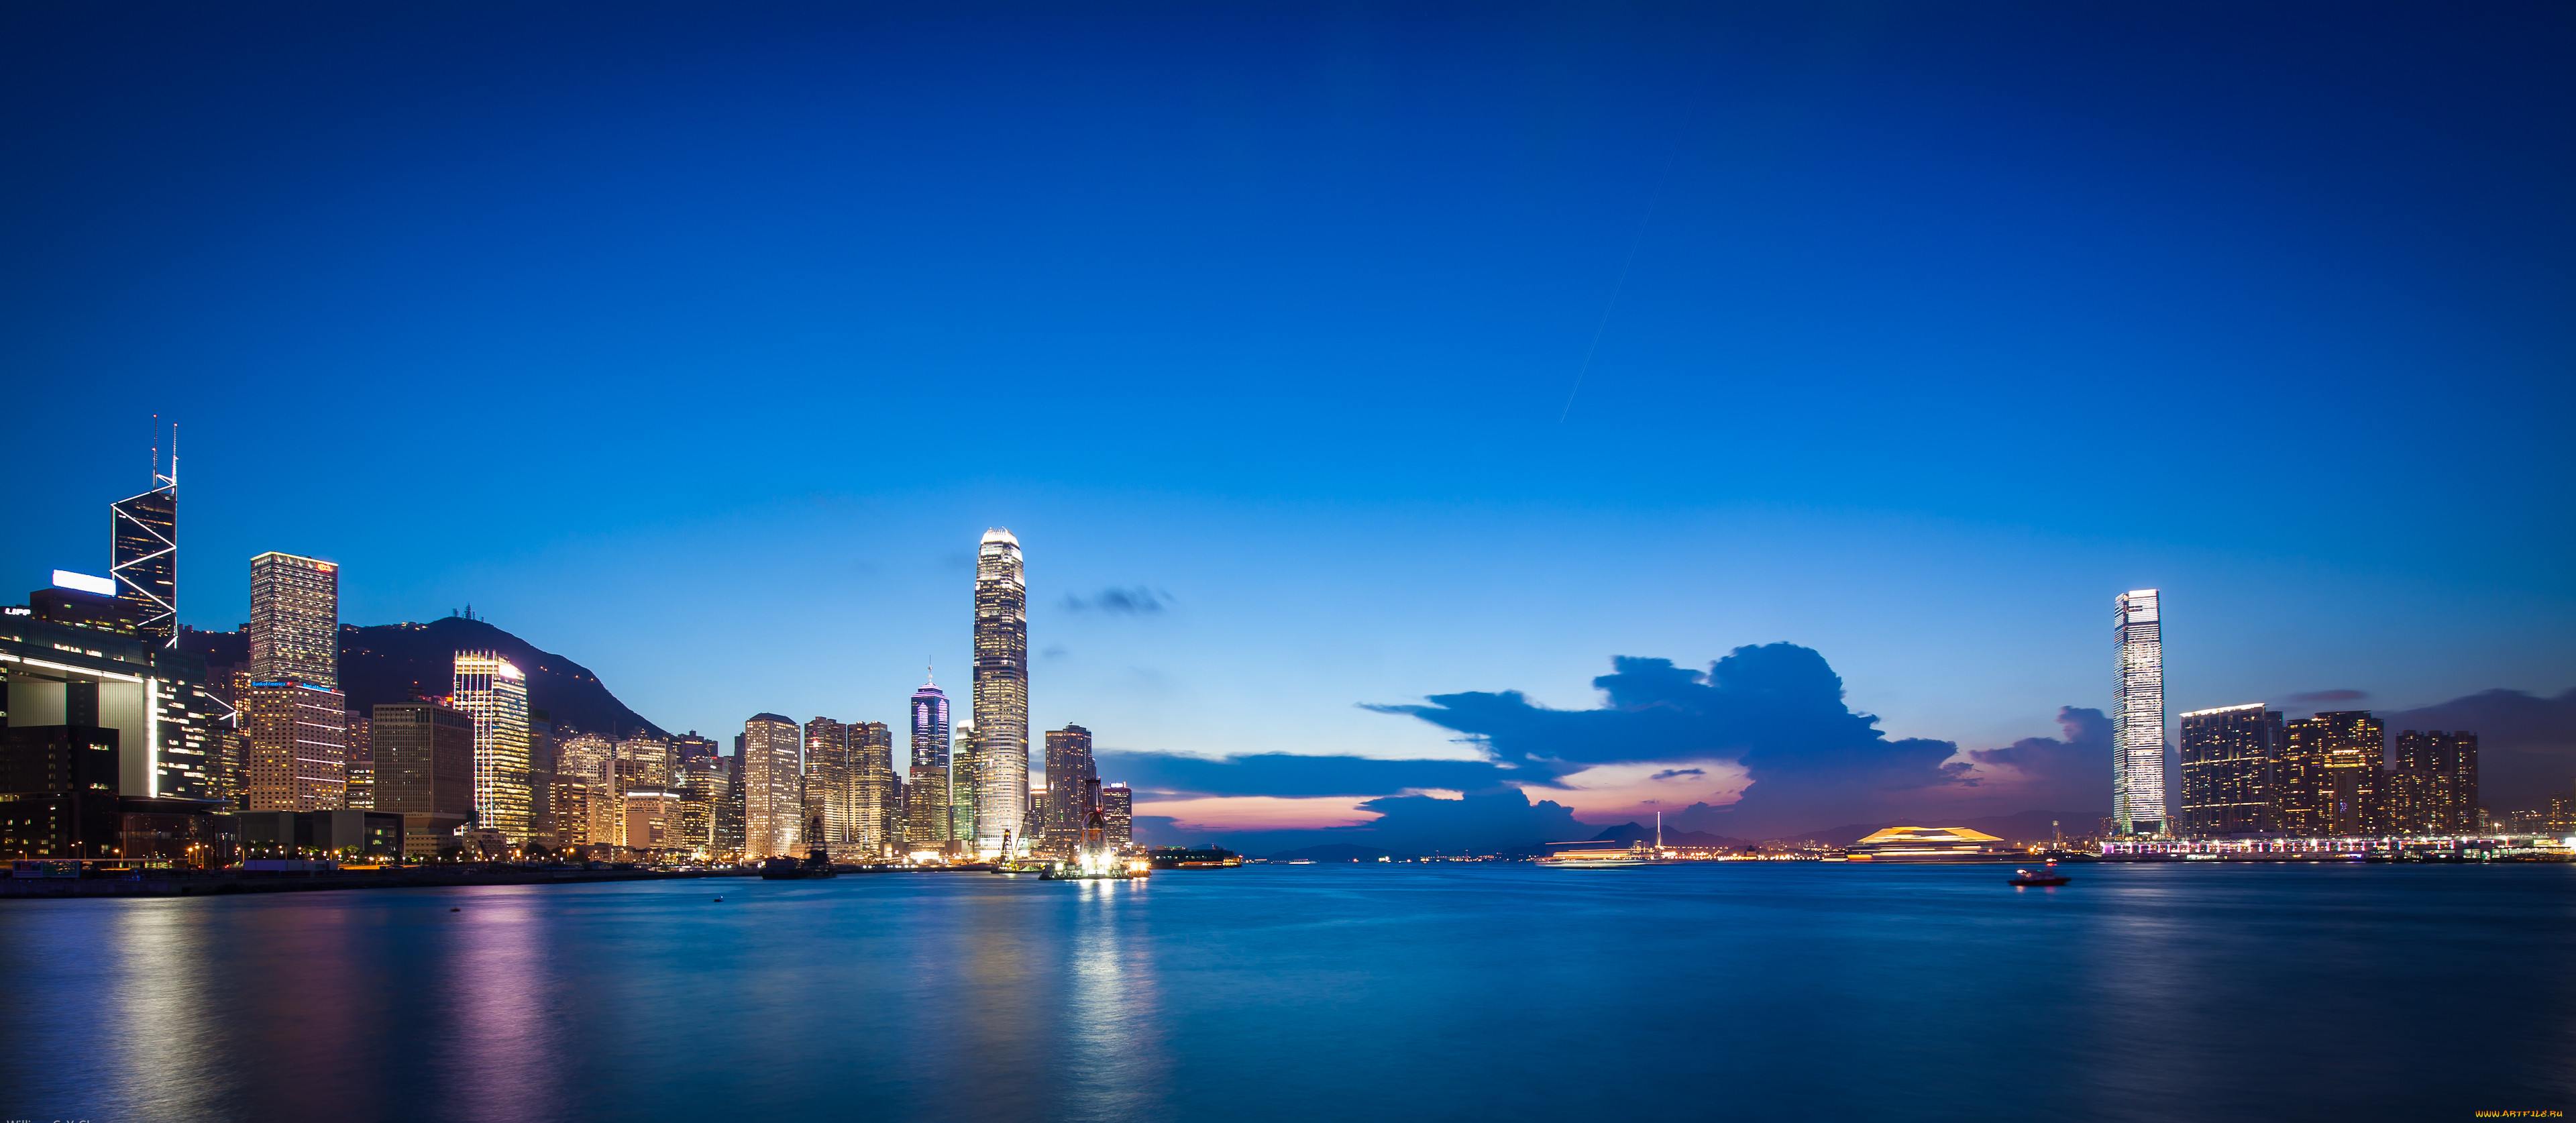 Обои стола 1366. Гонконг. Заставка на рабочий стол город. Красивые города заставки на рабочий стол. Фото 1366 768.